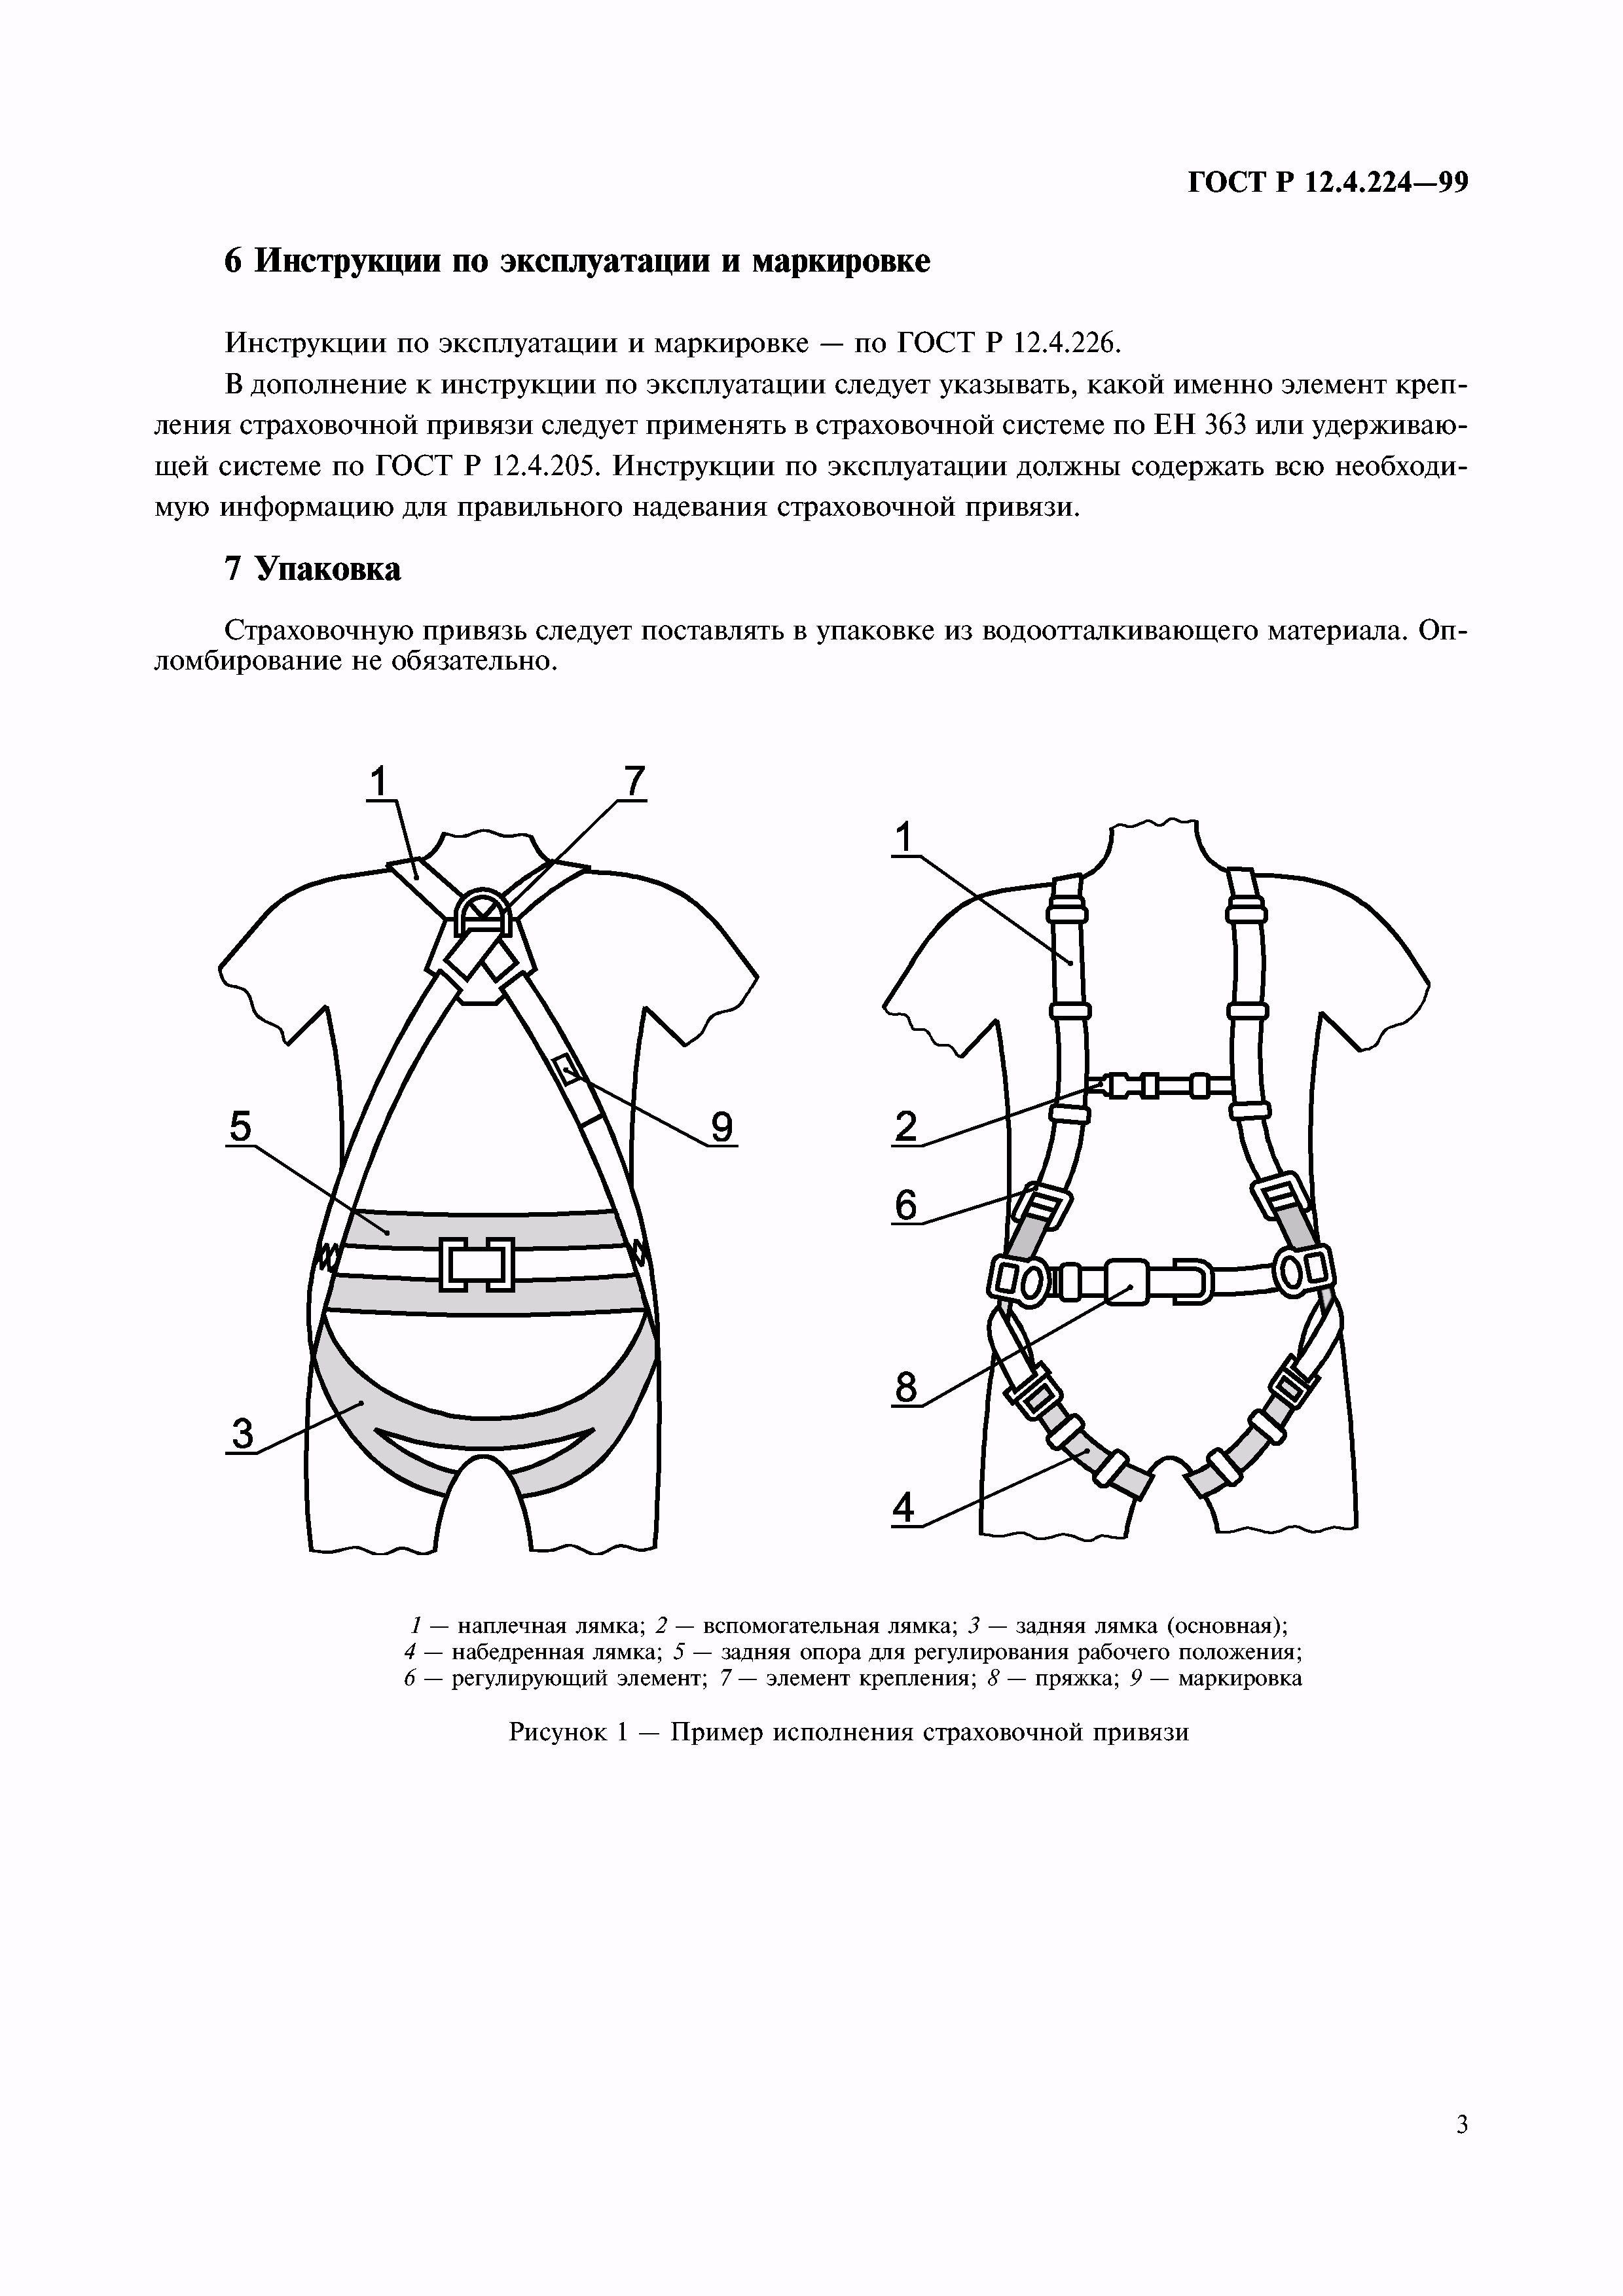 Инструкция по эксплуатации пояса предохранительного